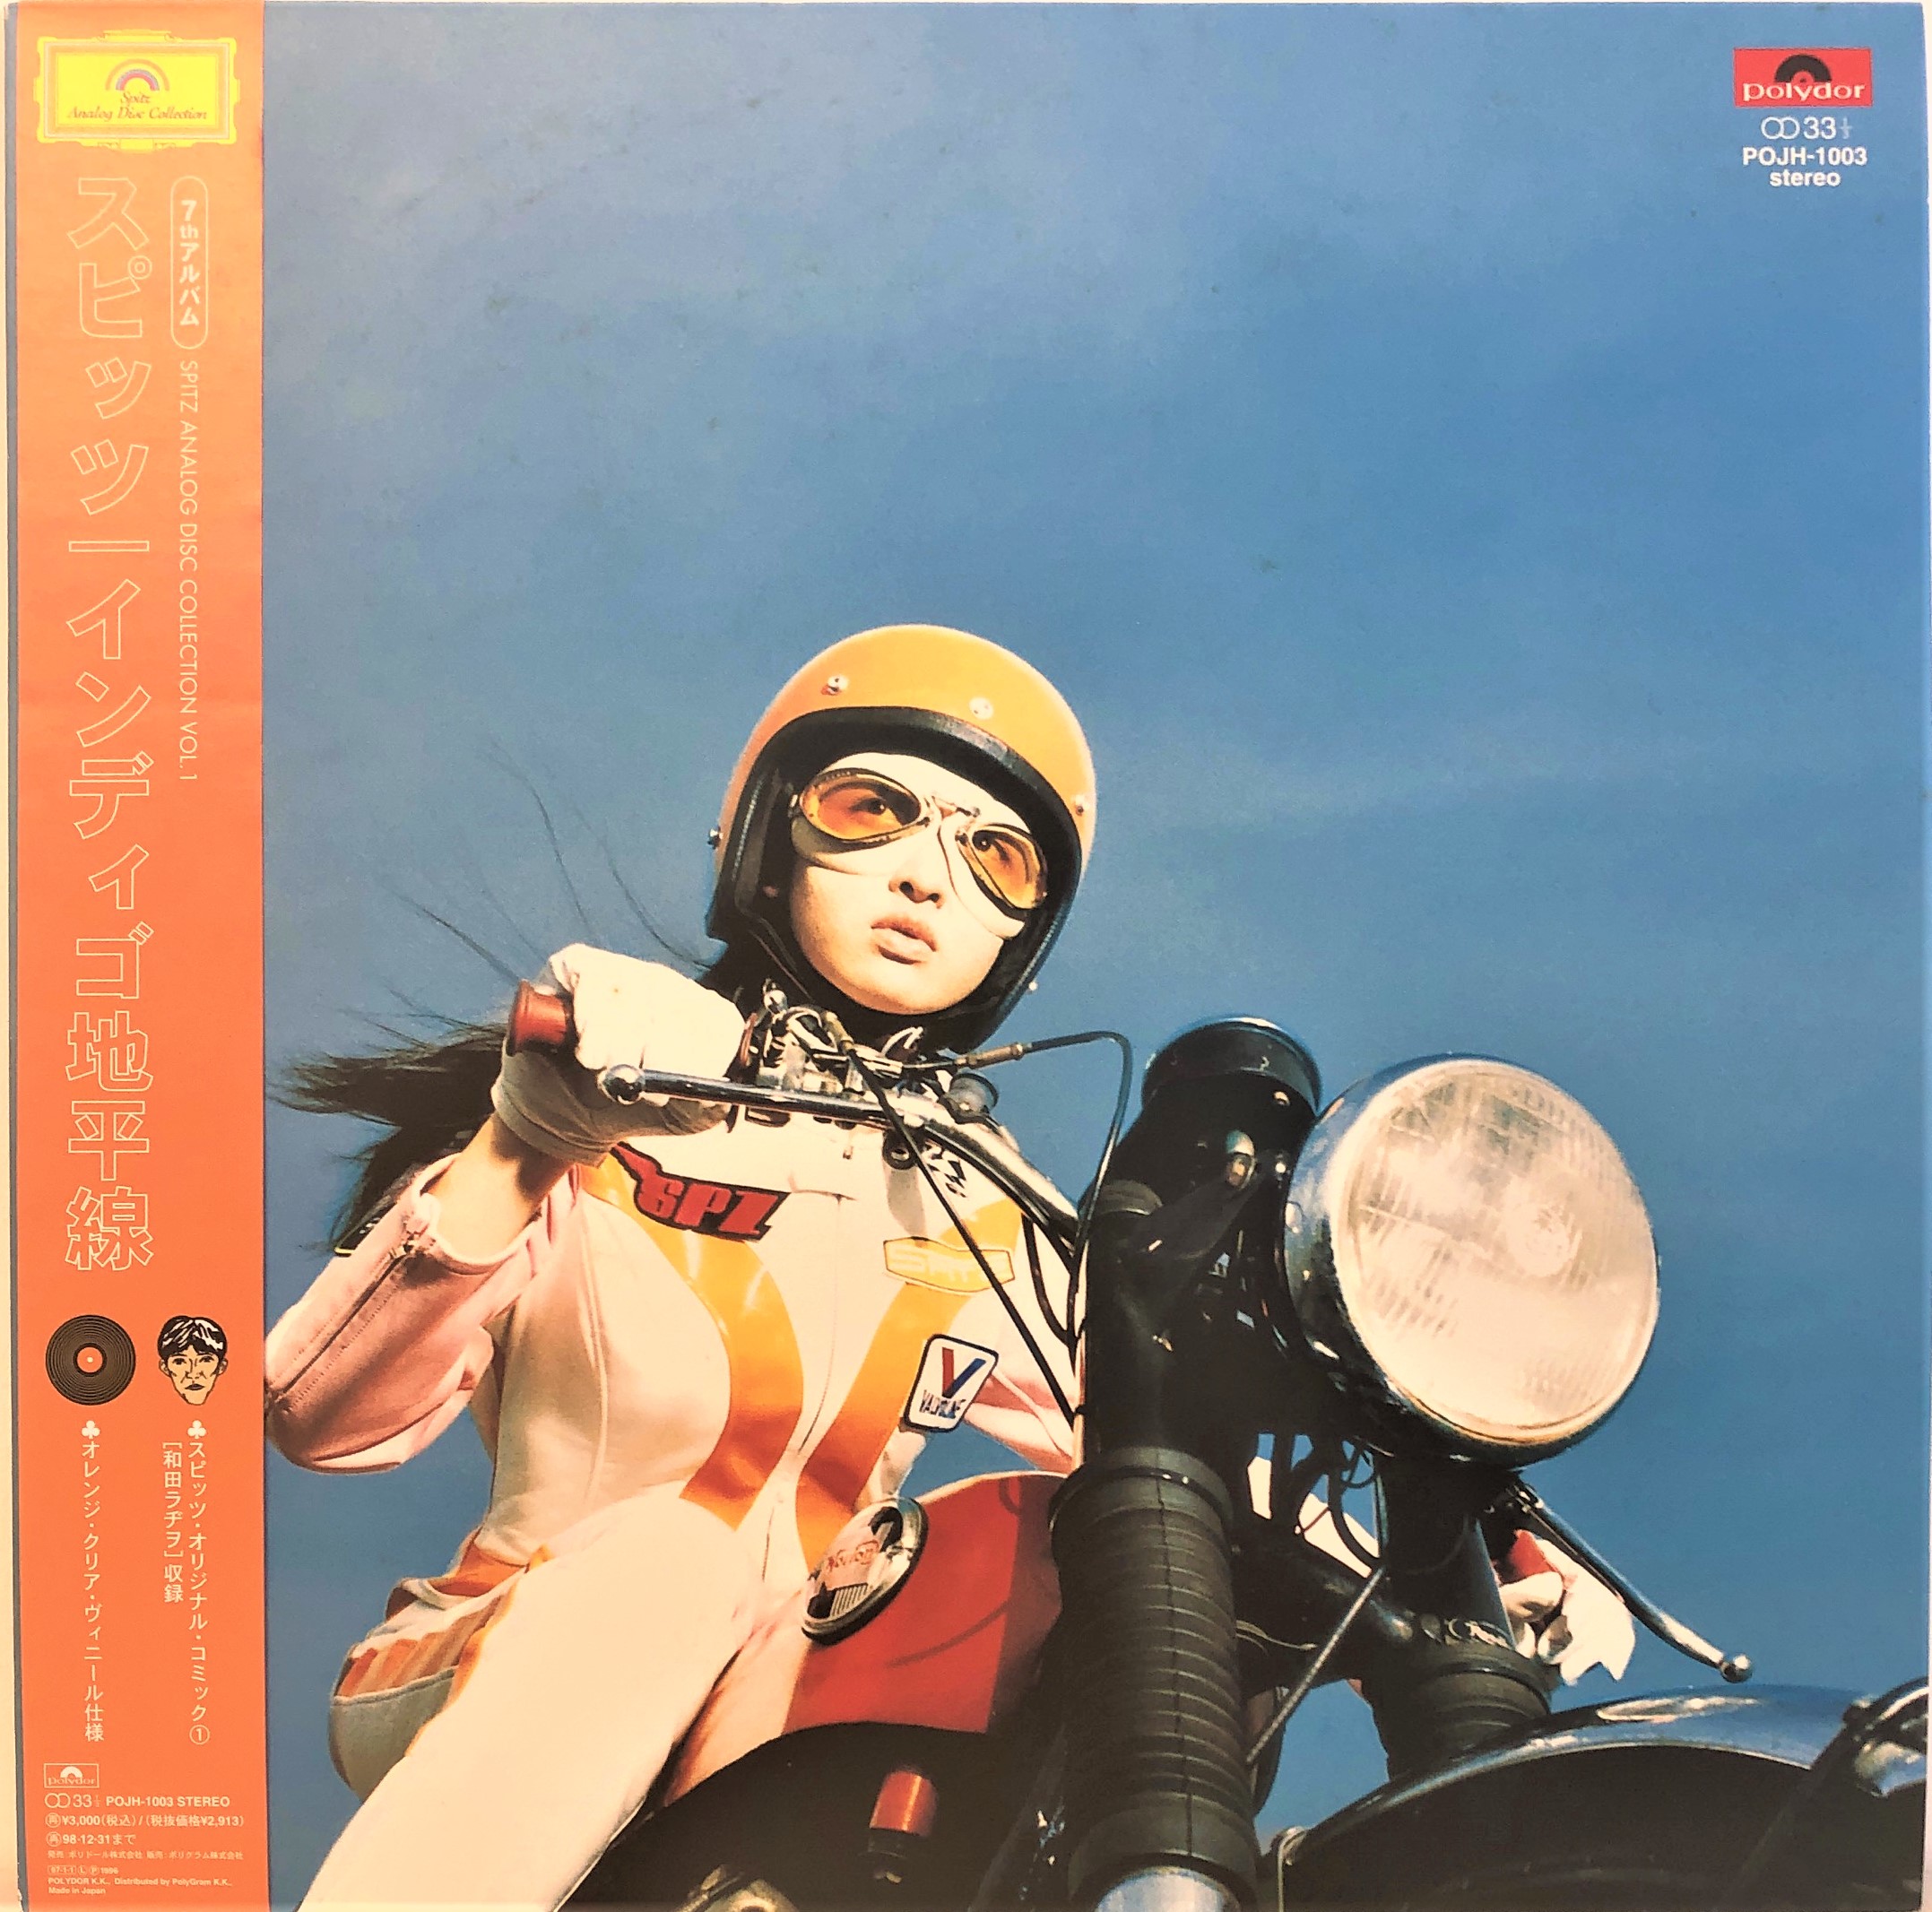 インディゴ地平線 スピッツ 初盤LP アナログ レコード - 邦楽